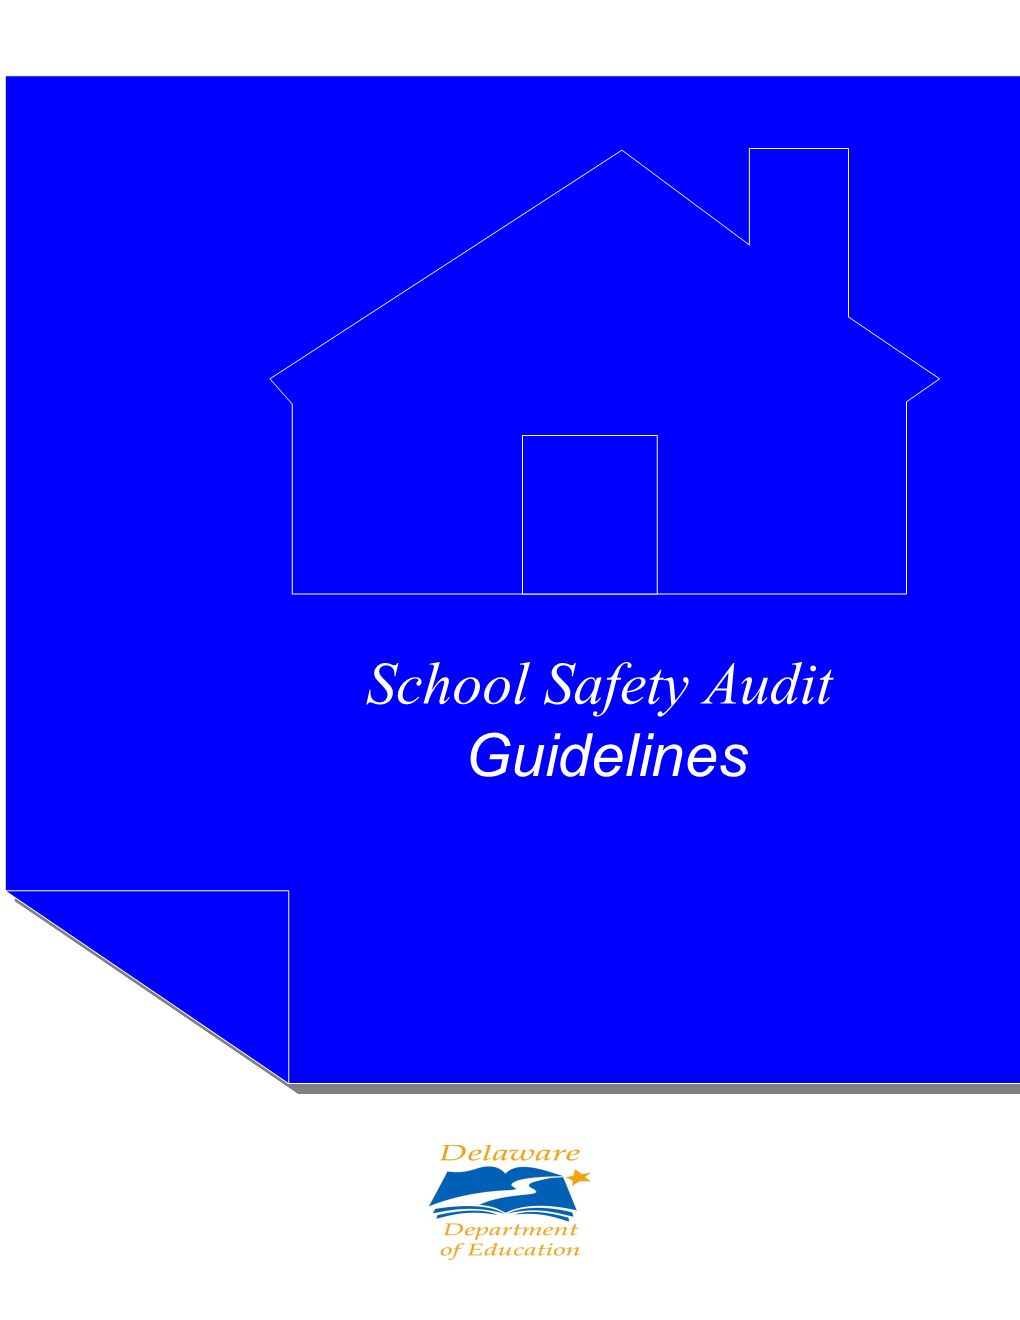 School Safety Audit Checklist